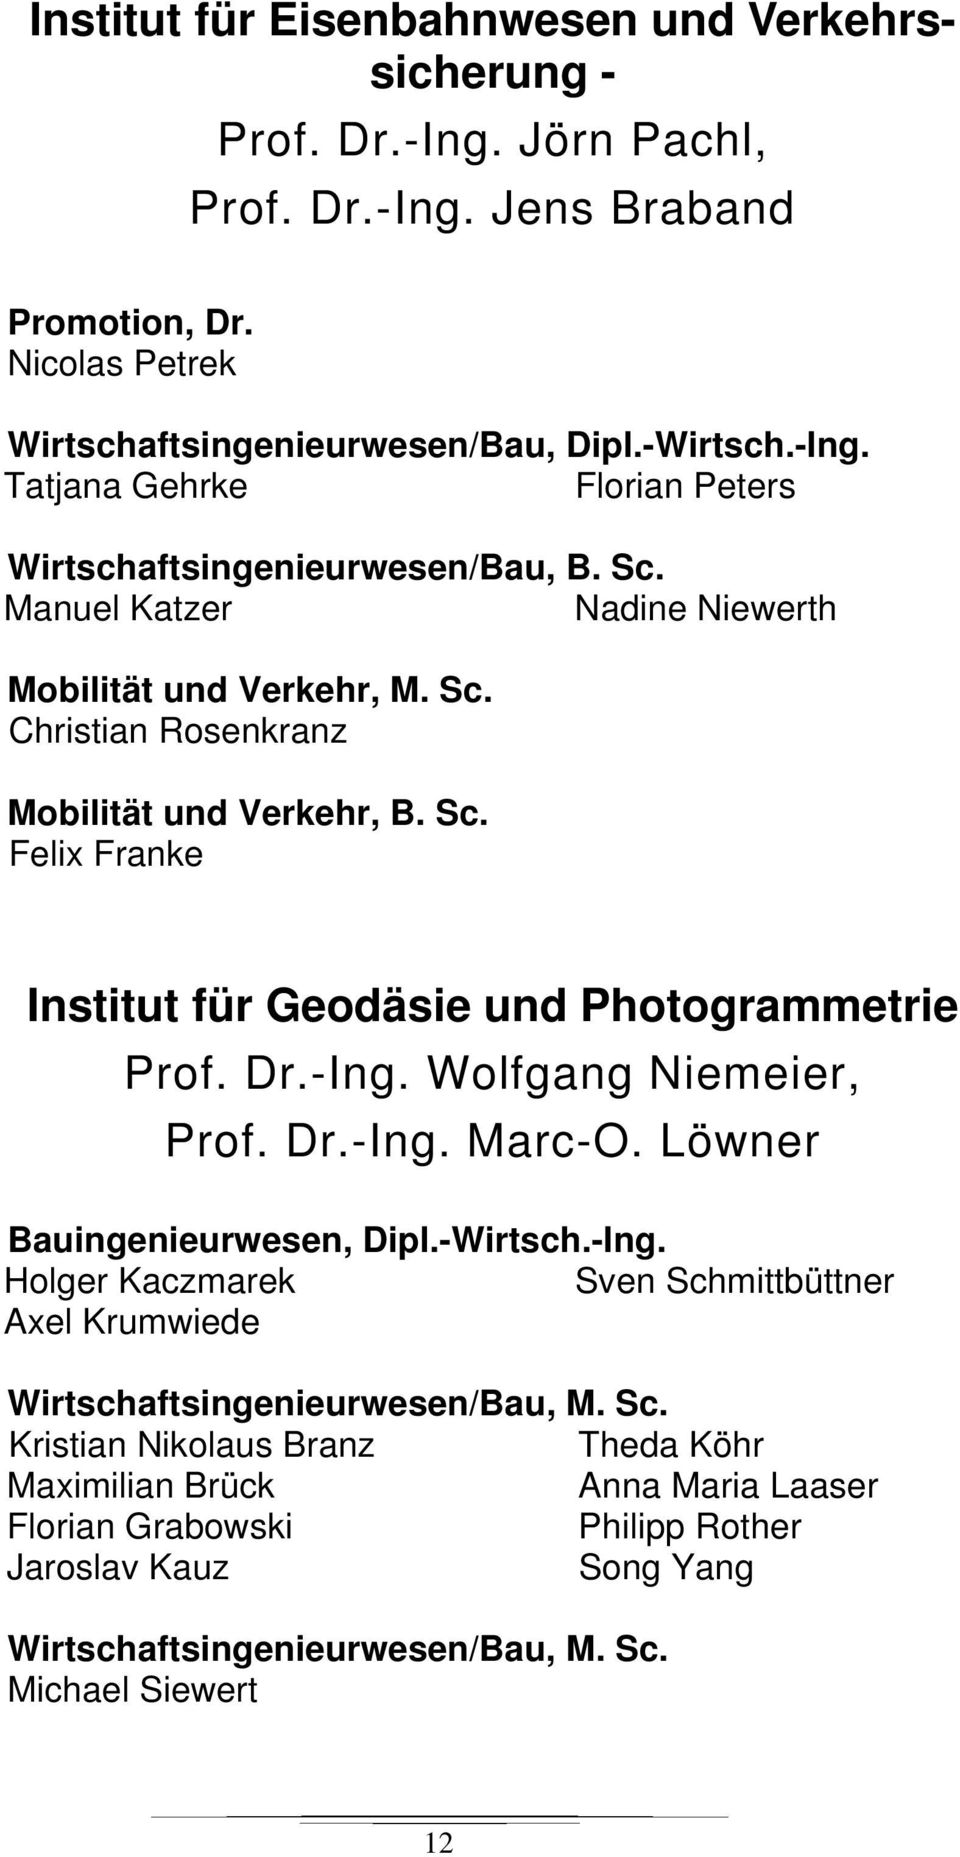 Wolfgang Niemeier, Prof. Dr.-Ing. Marc-O. Löwner Bauingenieurwesen, Dipl.-Wirtsch.-Ing. Holger Kaczmarek Sven Sch